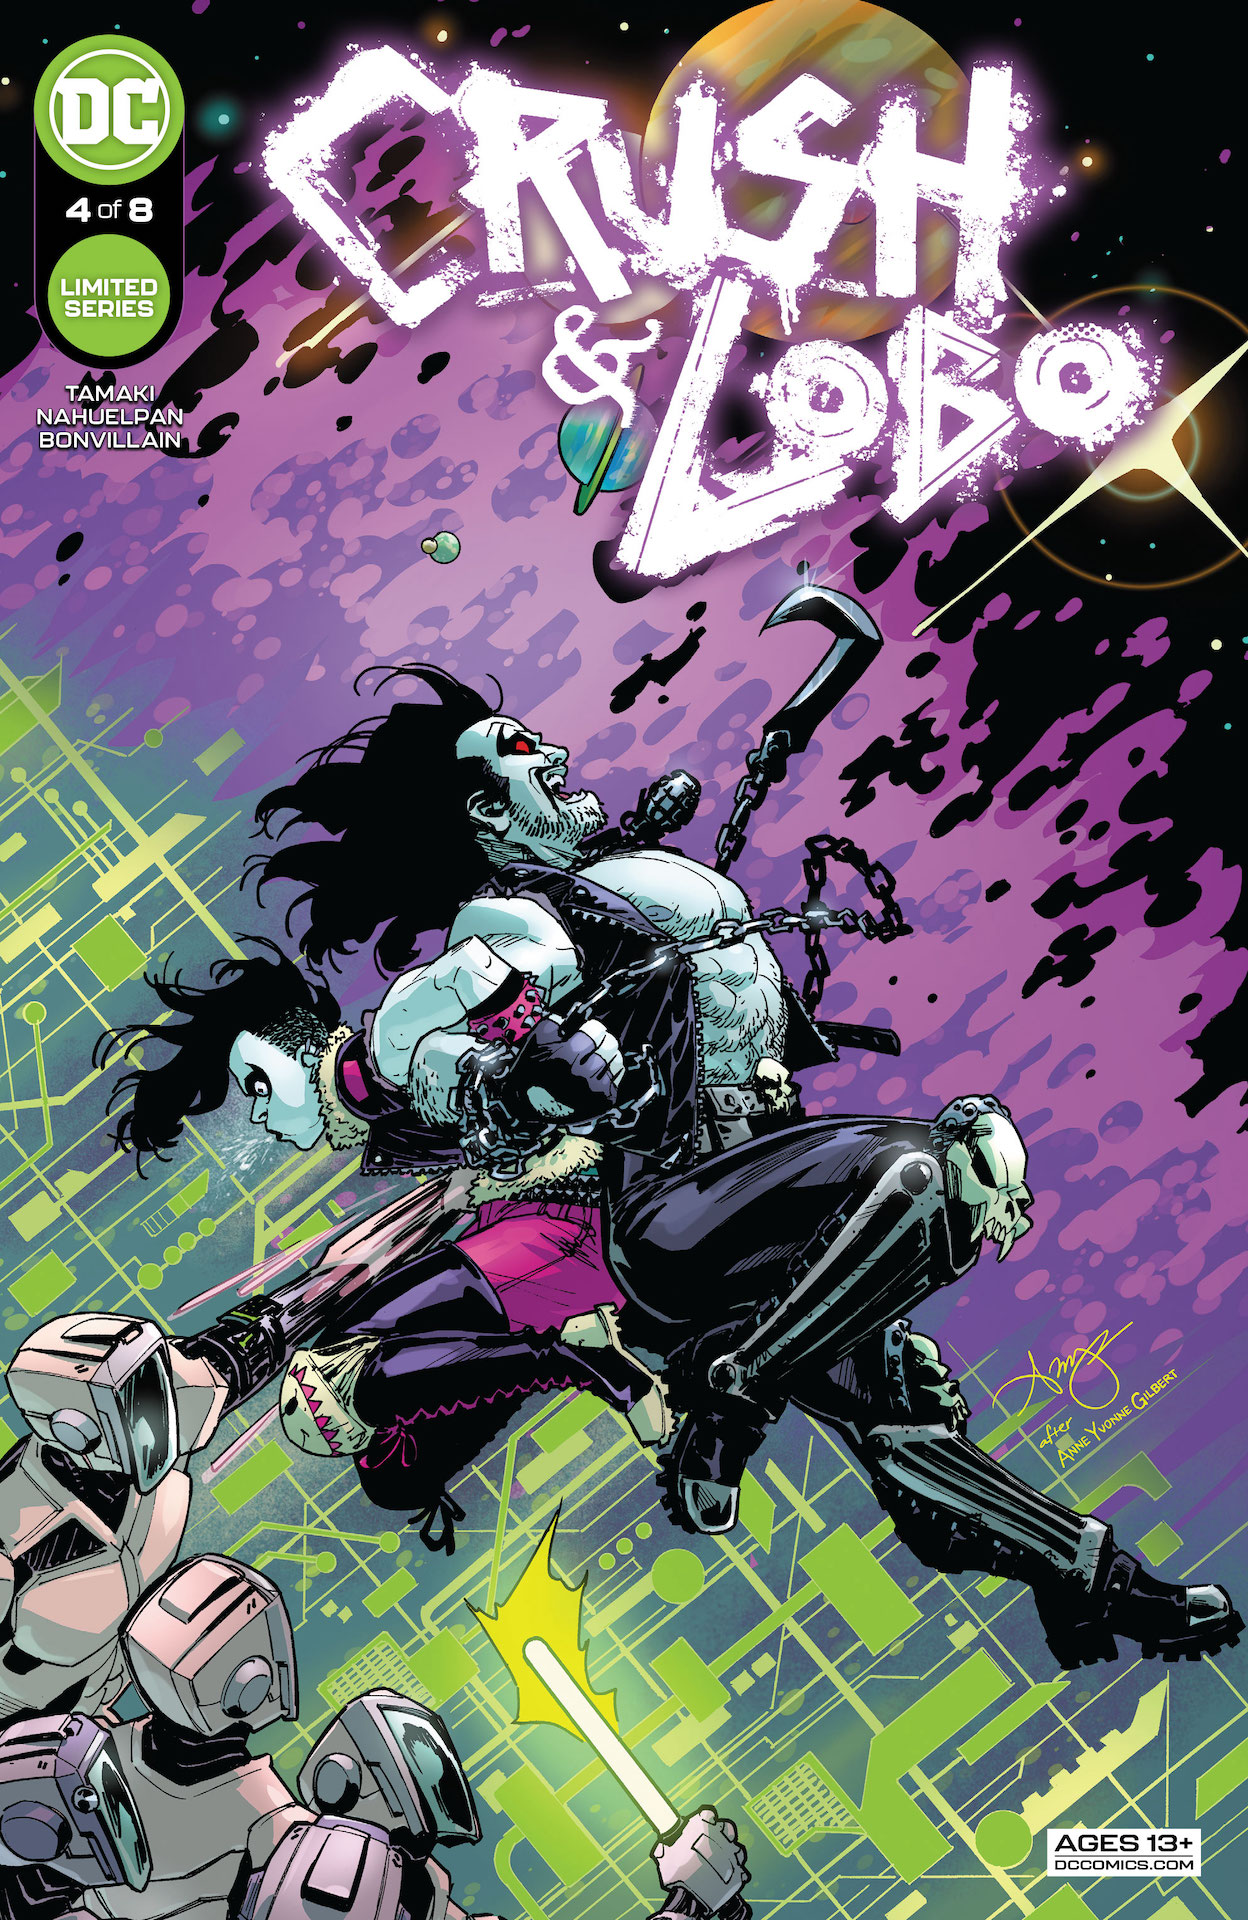 DC Preview: Crush & Lobo #4